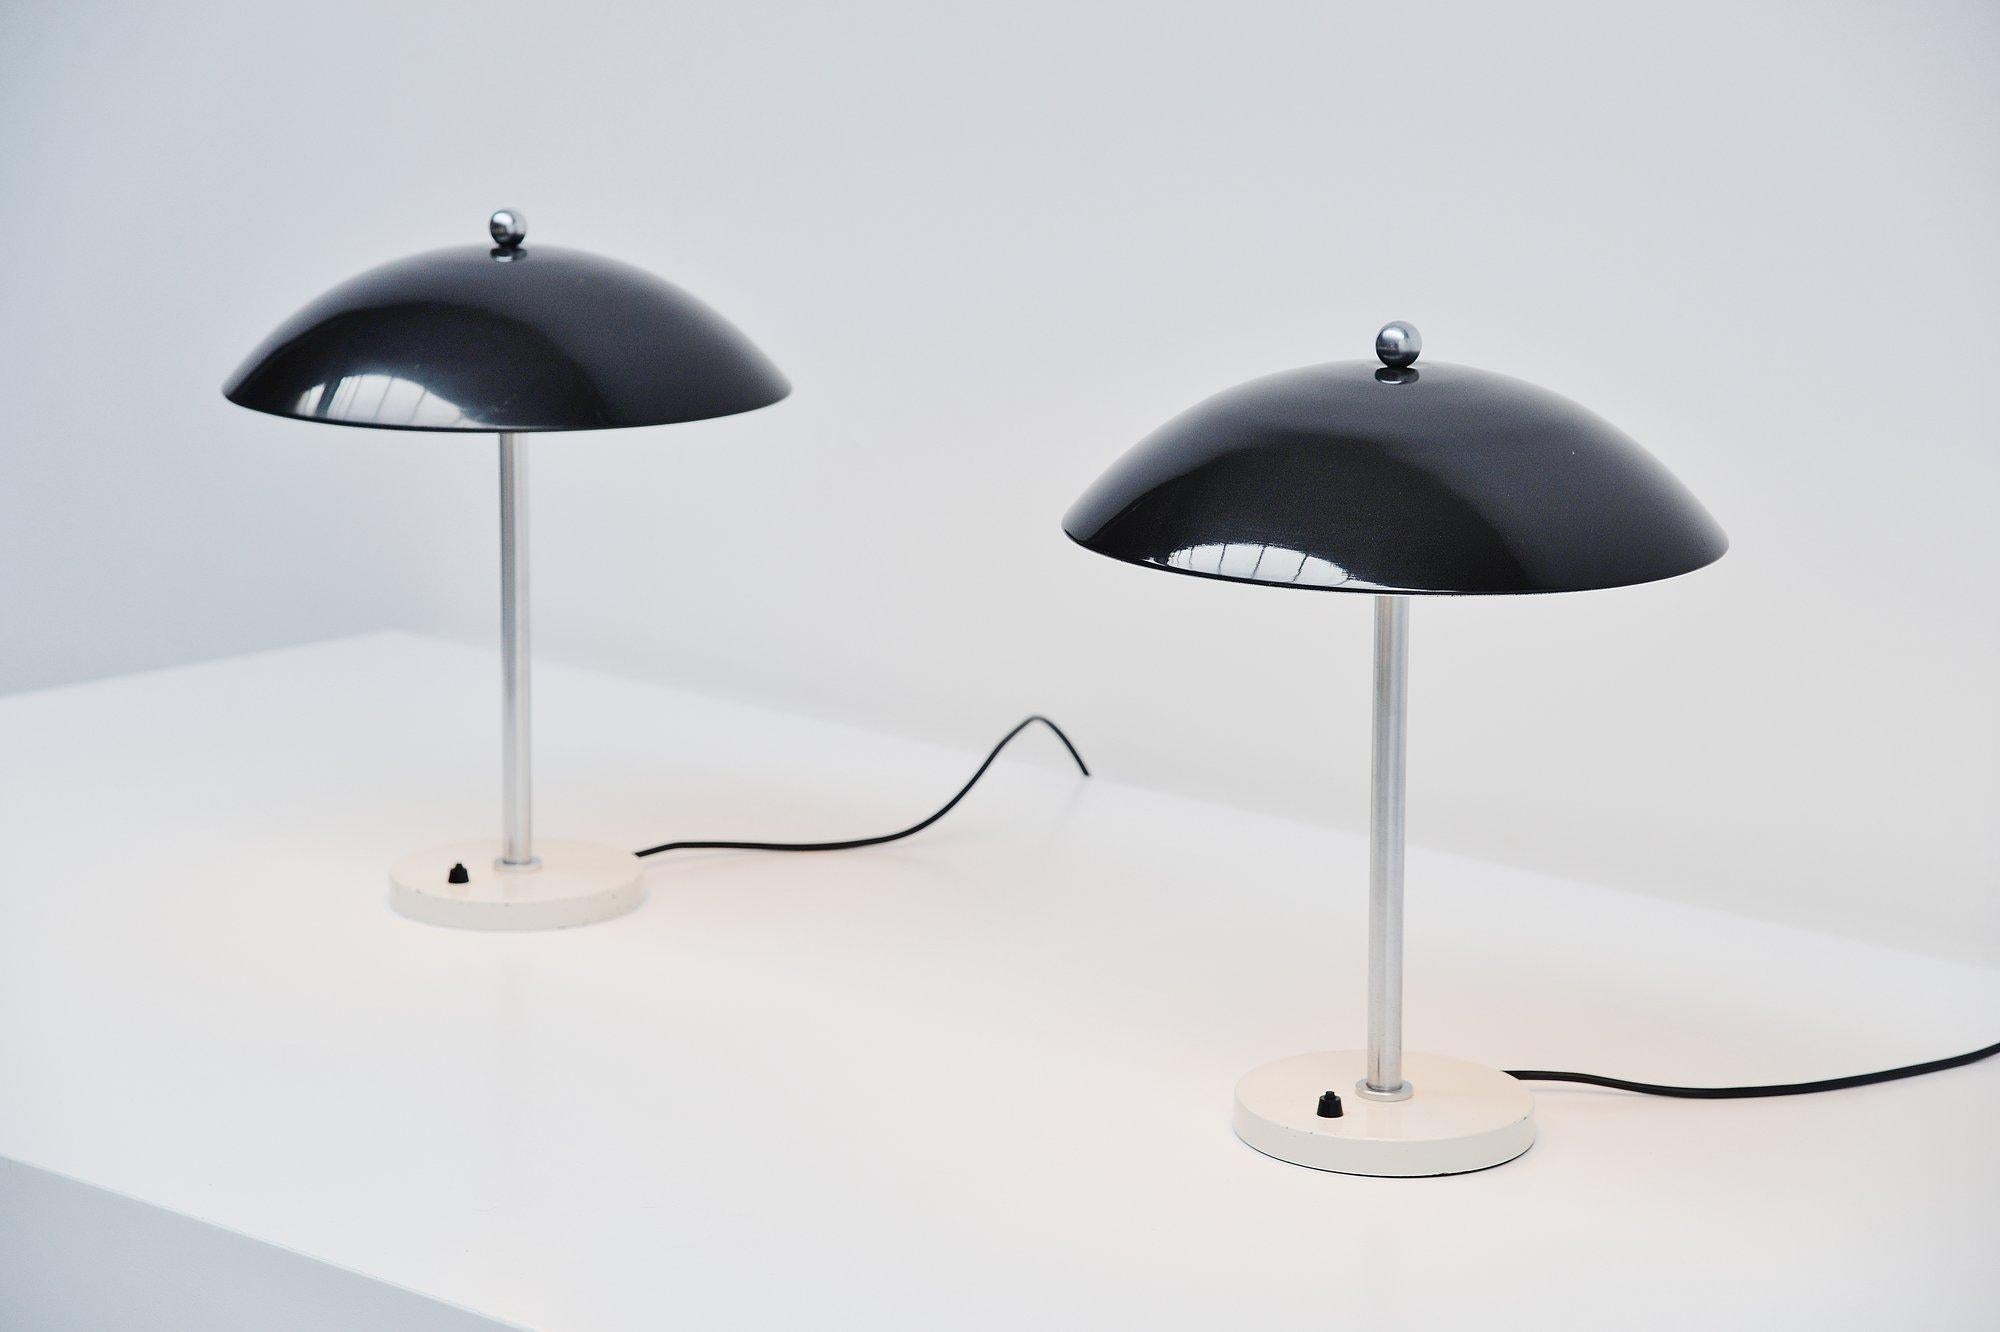 Sehr schönes pilzförmiges Tischlampenpaar Modell 5015 entworfen von Wim Rietveld und hergestellt von Gispen Culemborg:: Holland 1950. Diese Lampen haben einen runden:: gewichteten Sockel:: sind weiß lackiert und haben einen Stab aus gebürstetem